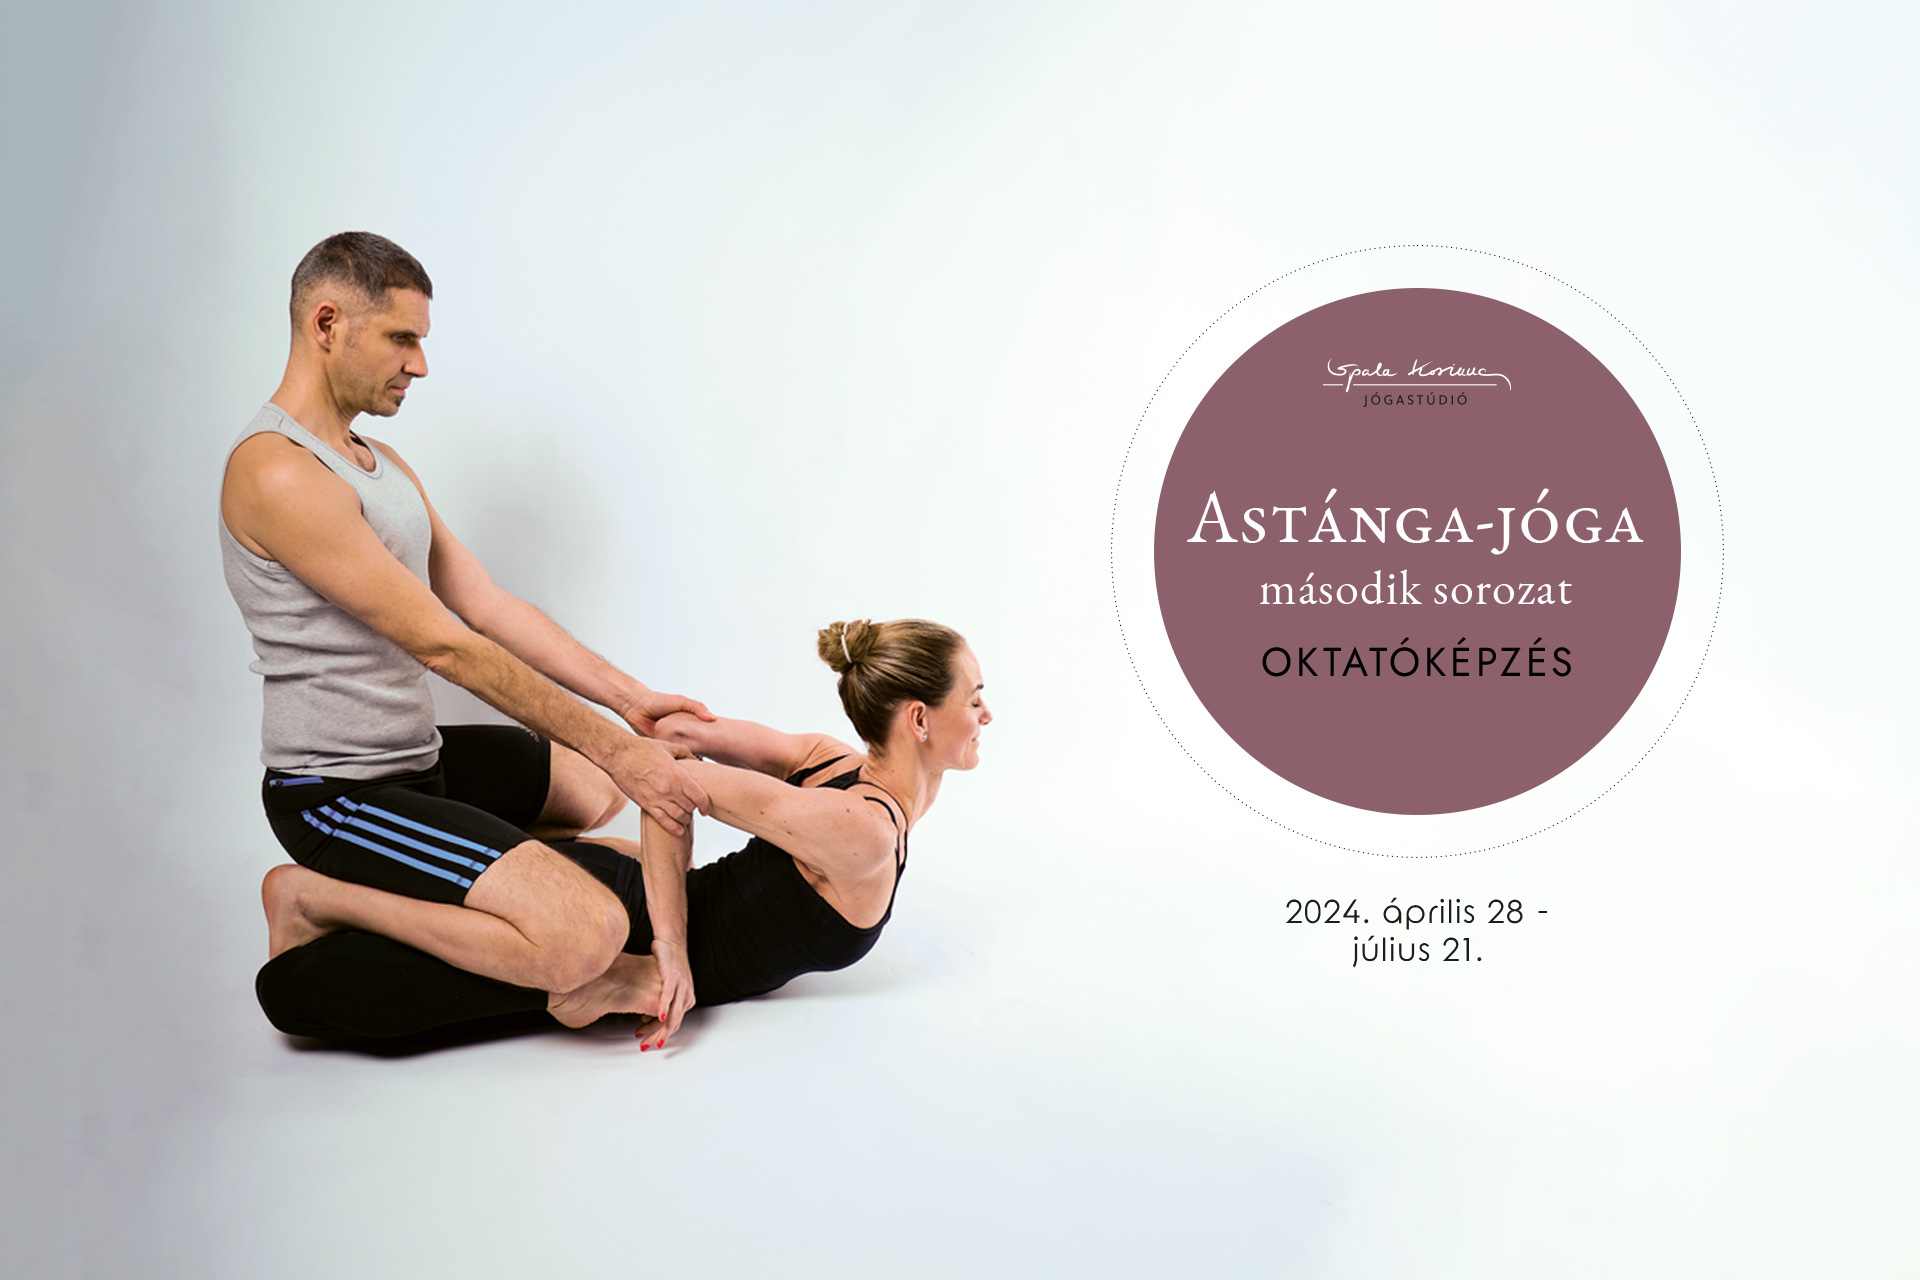 Astánga-jóga második sorozat oktatóképzés